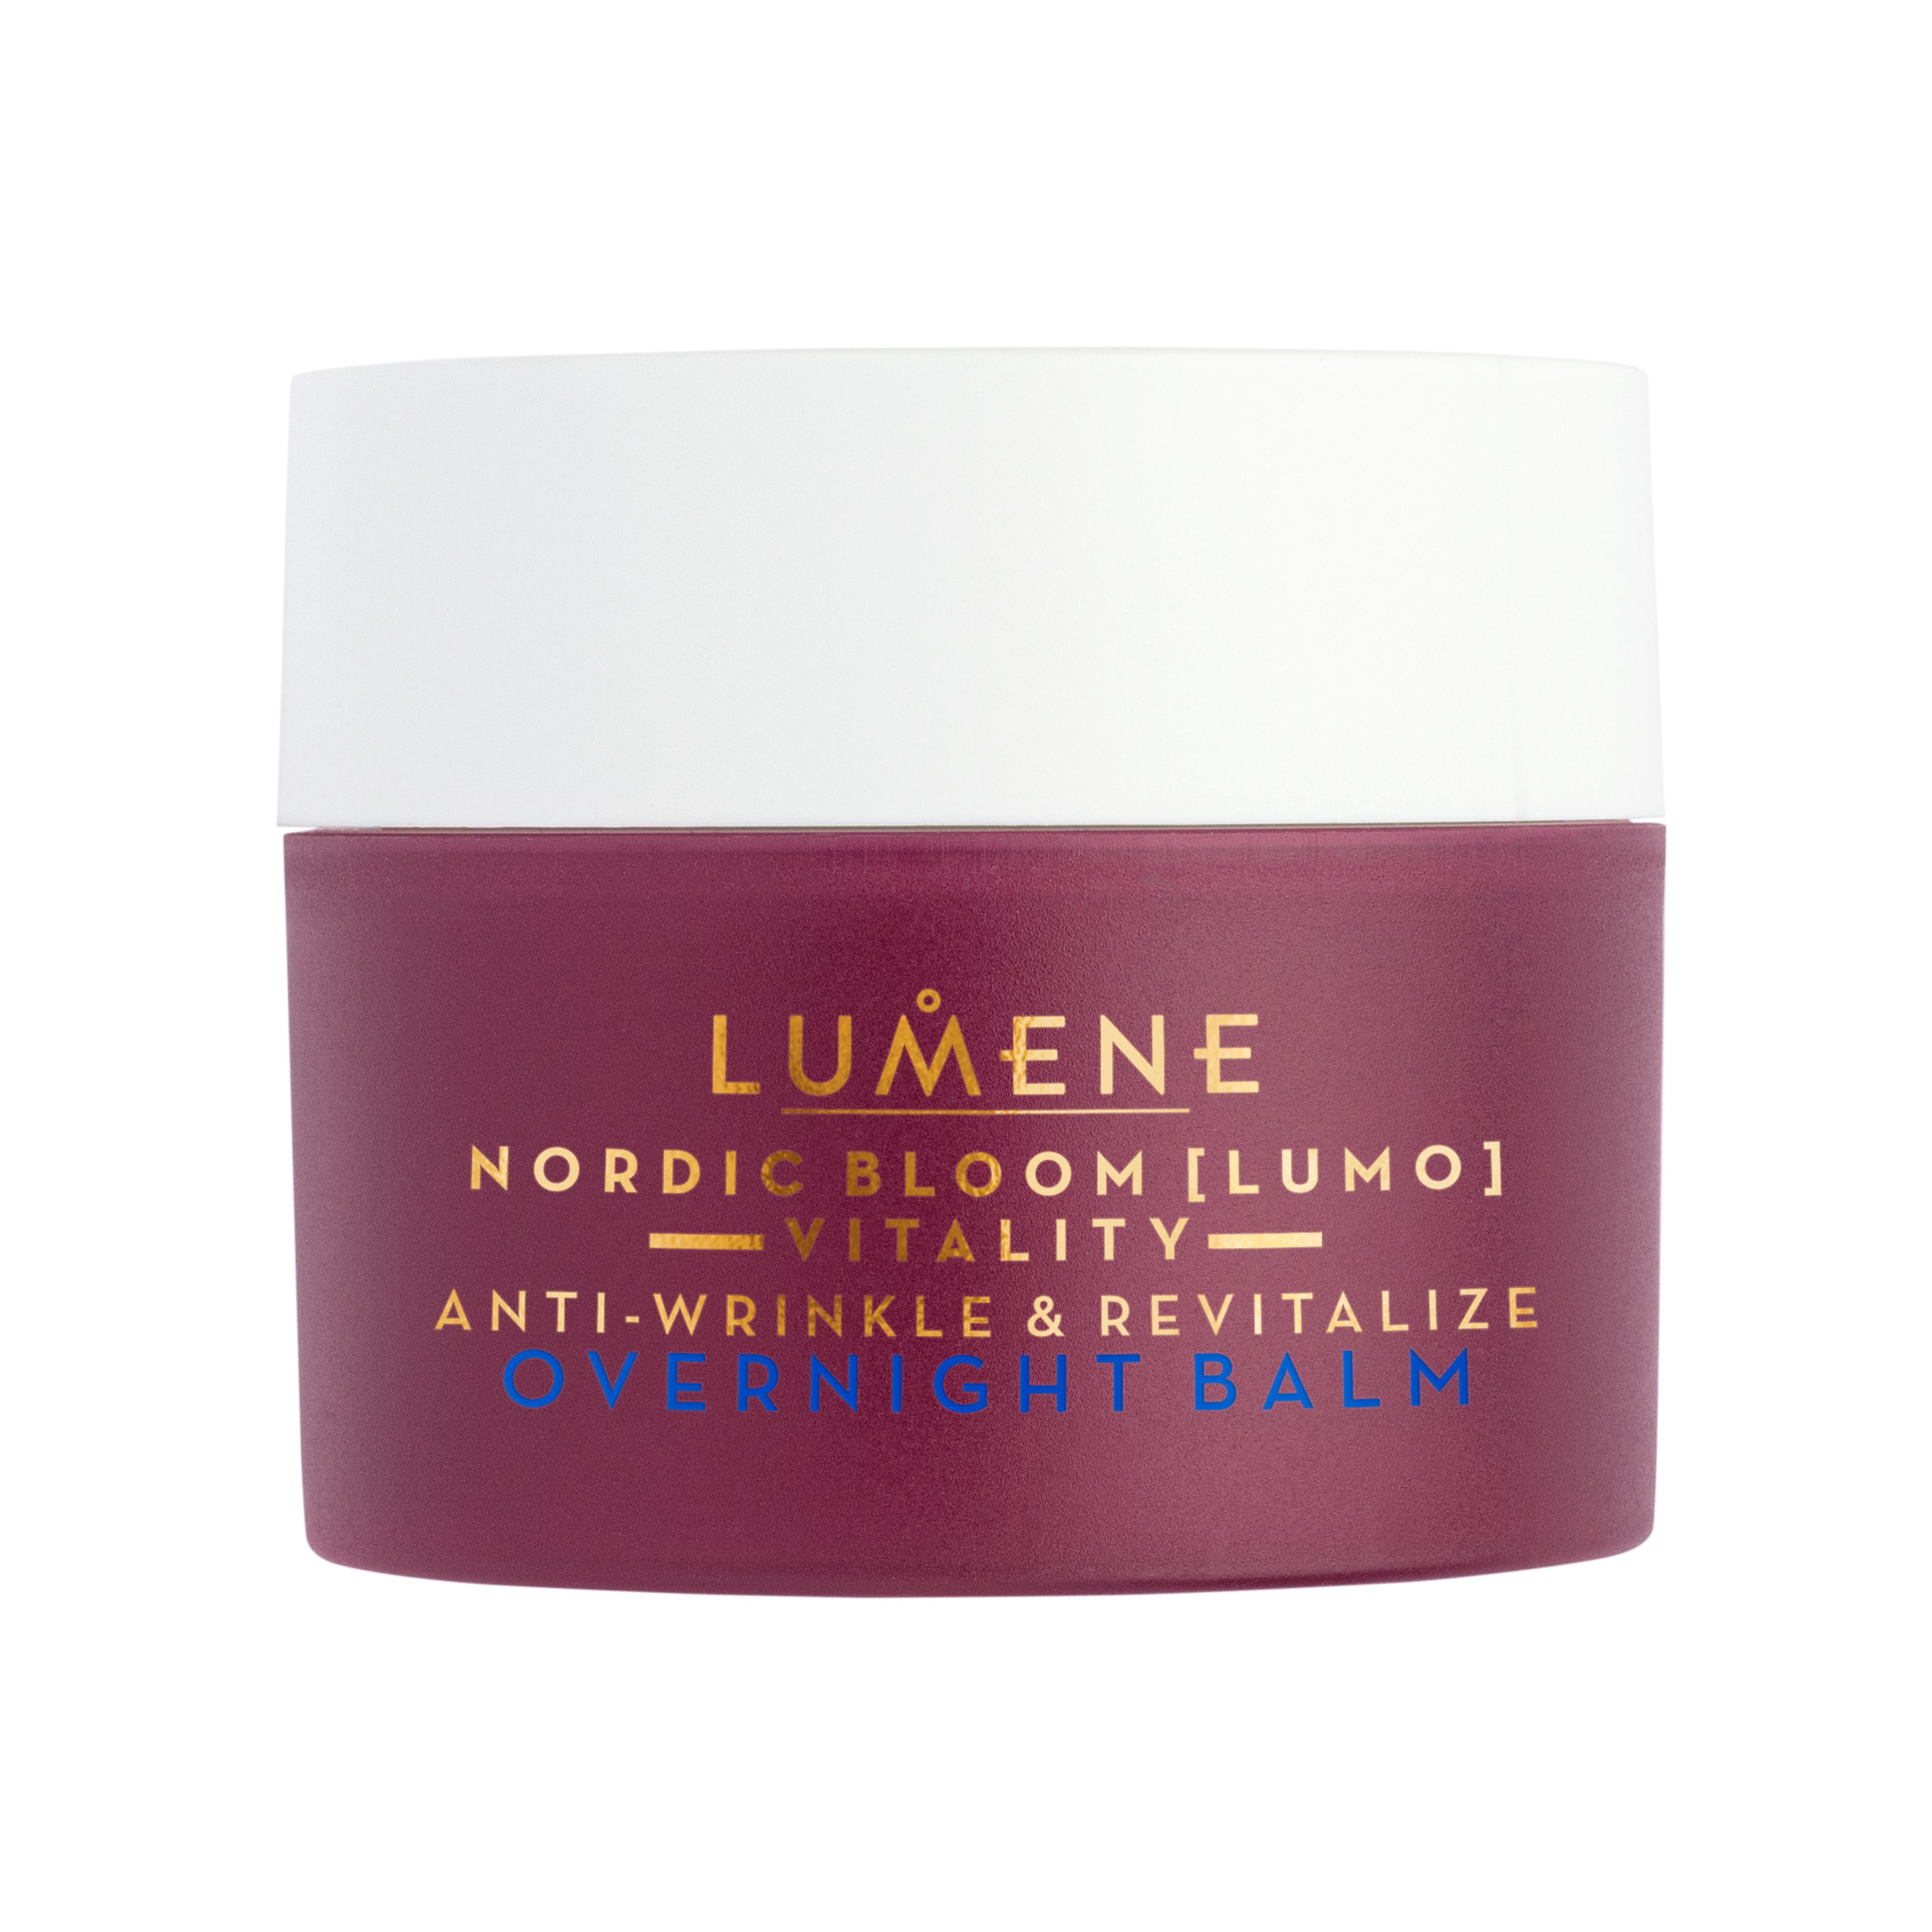 Bilde av Lumene Nordic Bloom Vitality Anti-wrinkle & Revitalize Overnight Balm